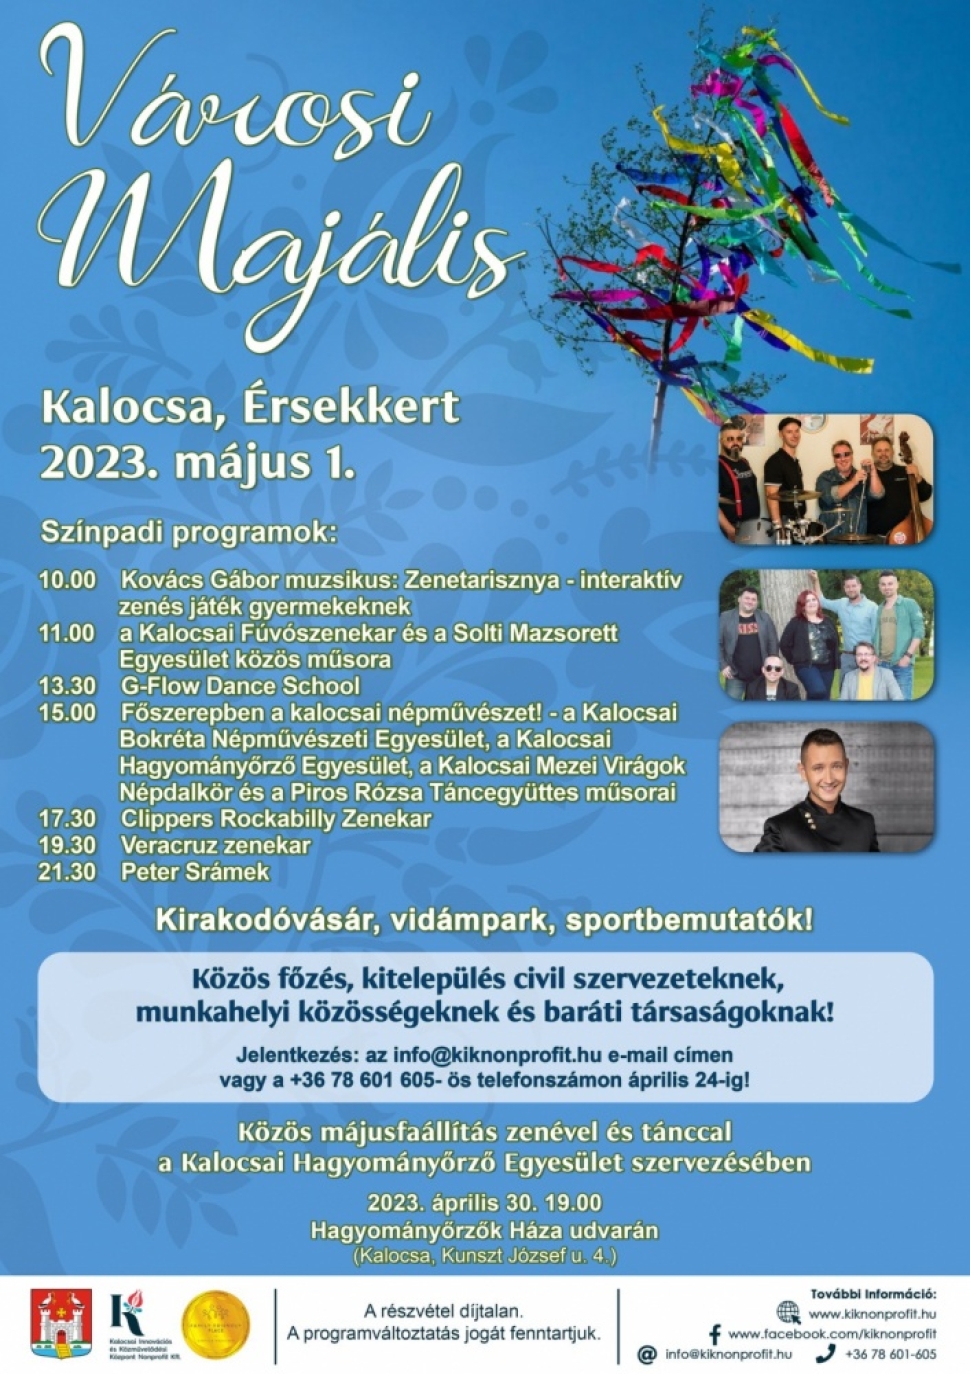 Izgalmas május 1 programok várnak Kalocsán is 